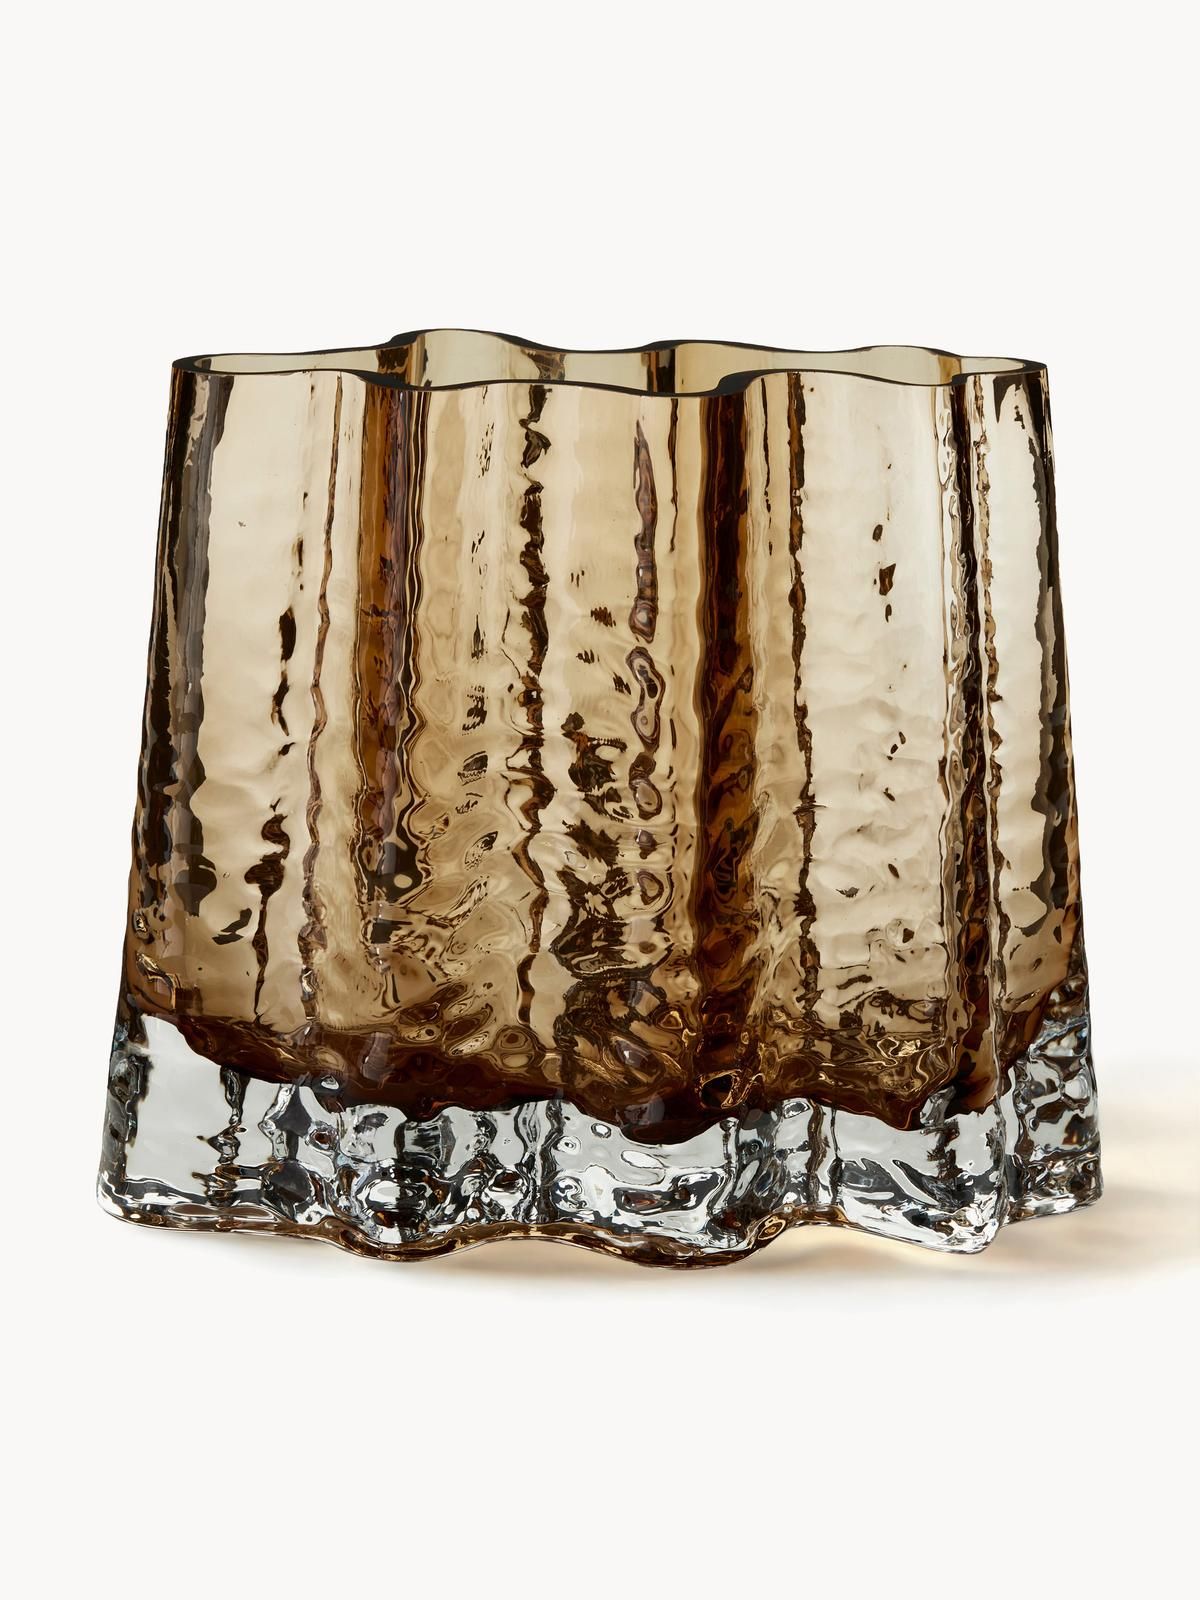 Mundgeblasene Glas-Vase Gry mit strukturierter Oberfläche, H 19 cm von Cooee Design